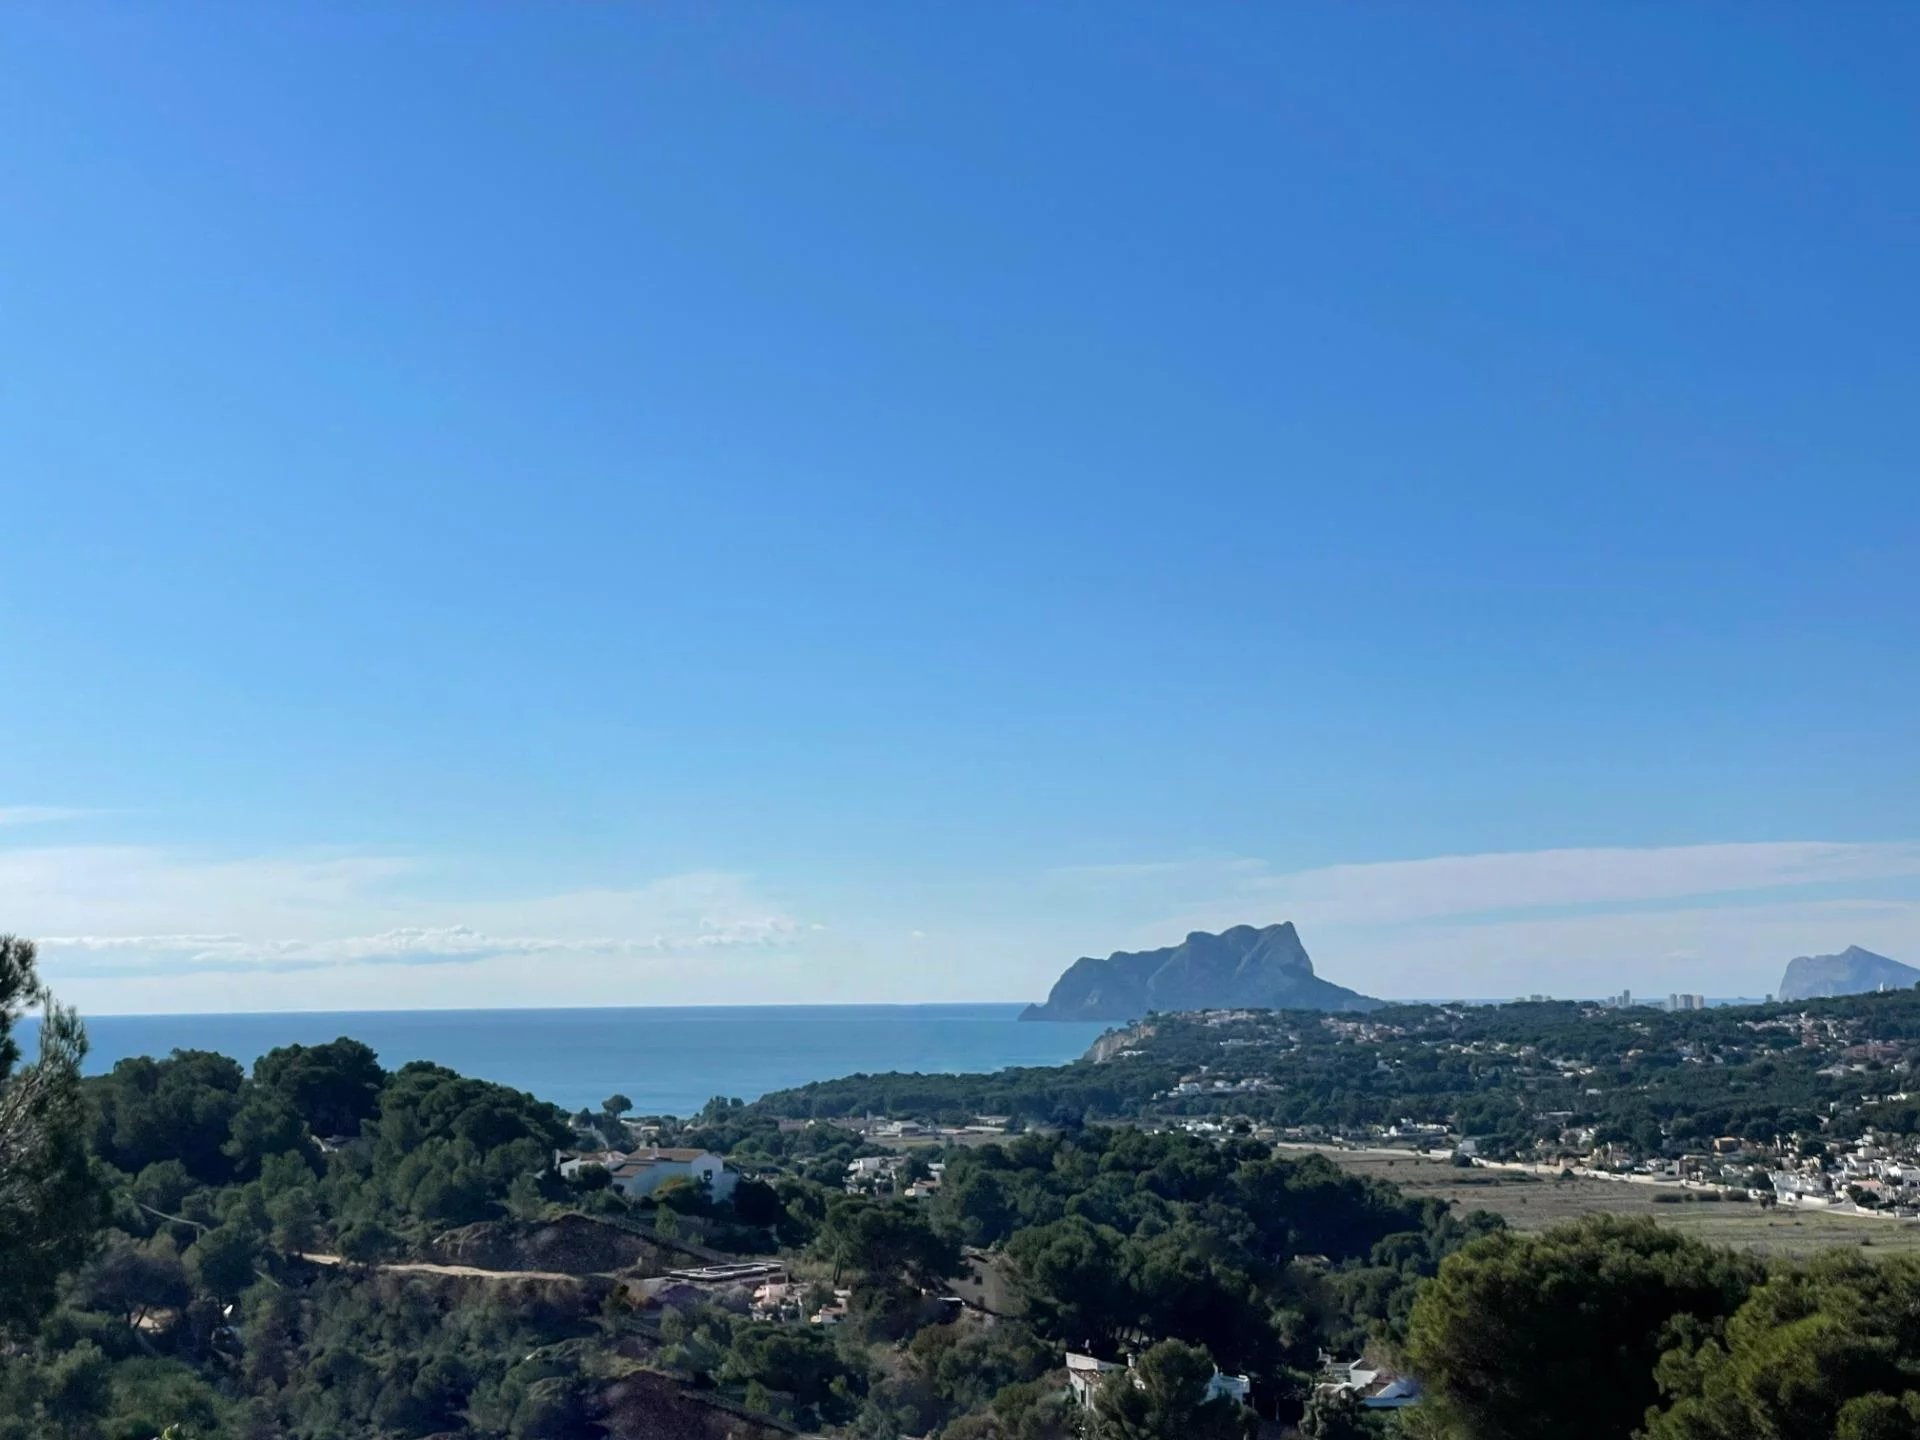 Villa in Ibiza-stijl met panoramische zeezichten over de vallei